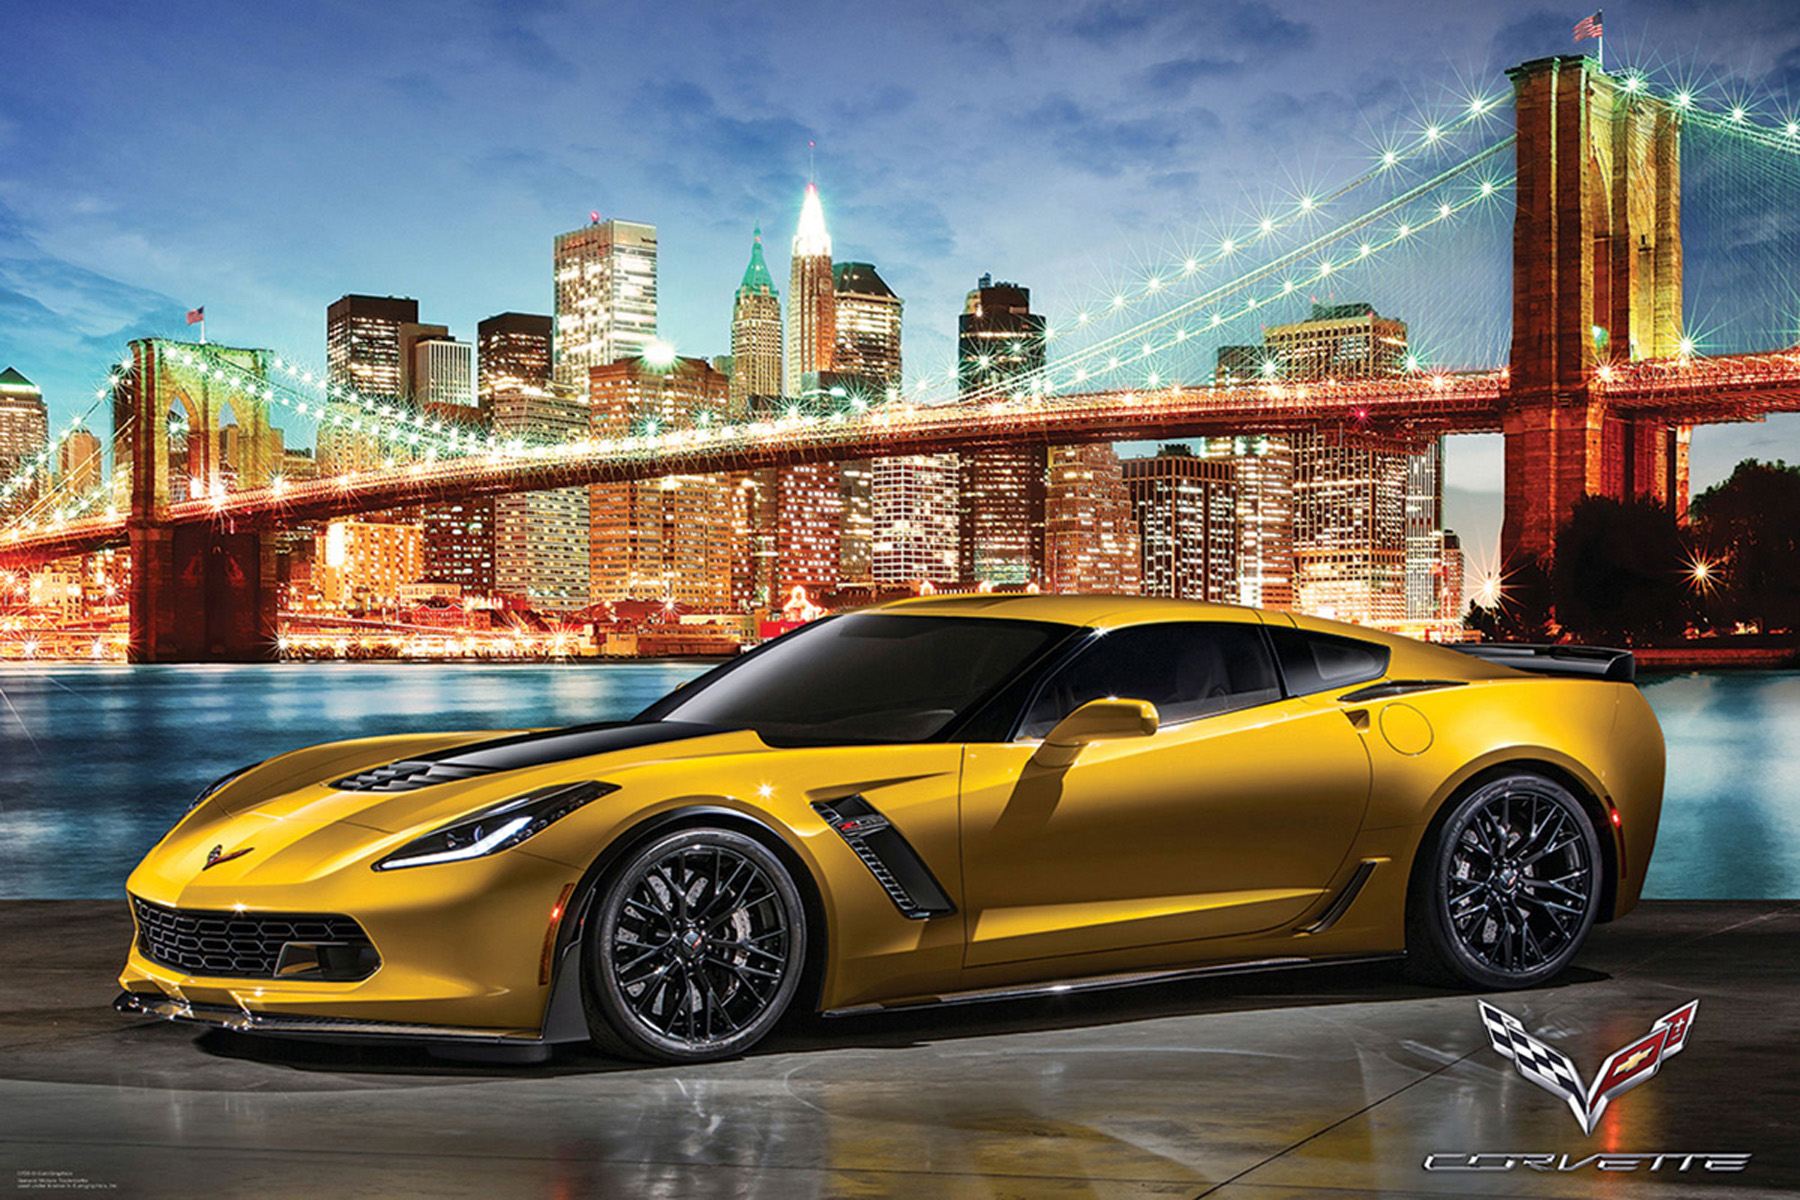 Corvette - Z06 in York New